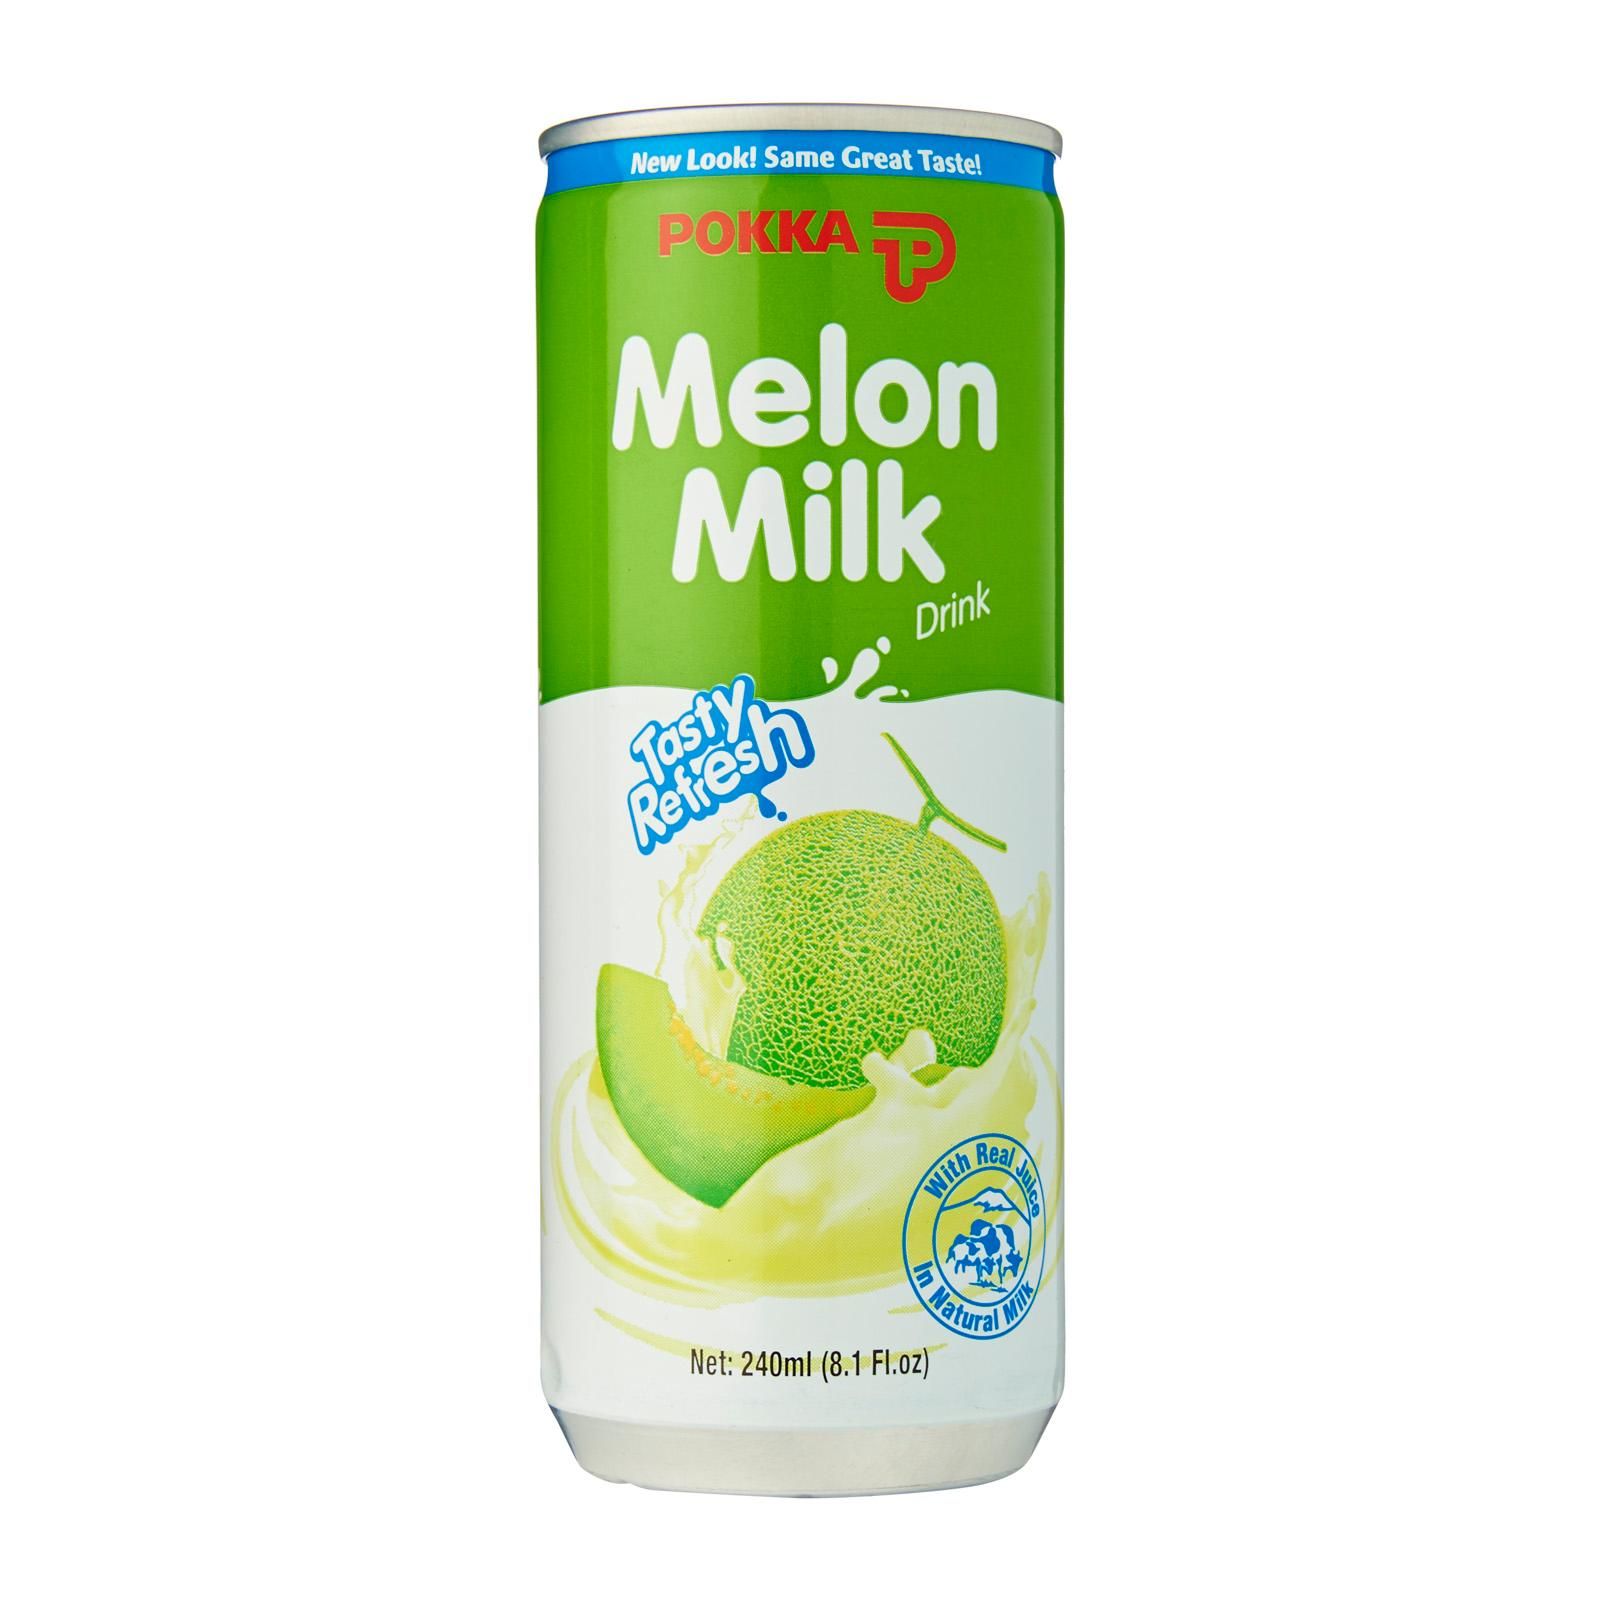 Pokka Melon Milk Drink Japanese Candy & Snacks - Sweetie Kawaii